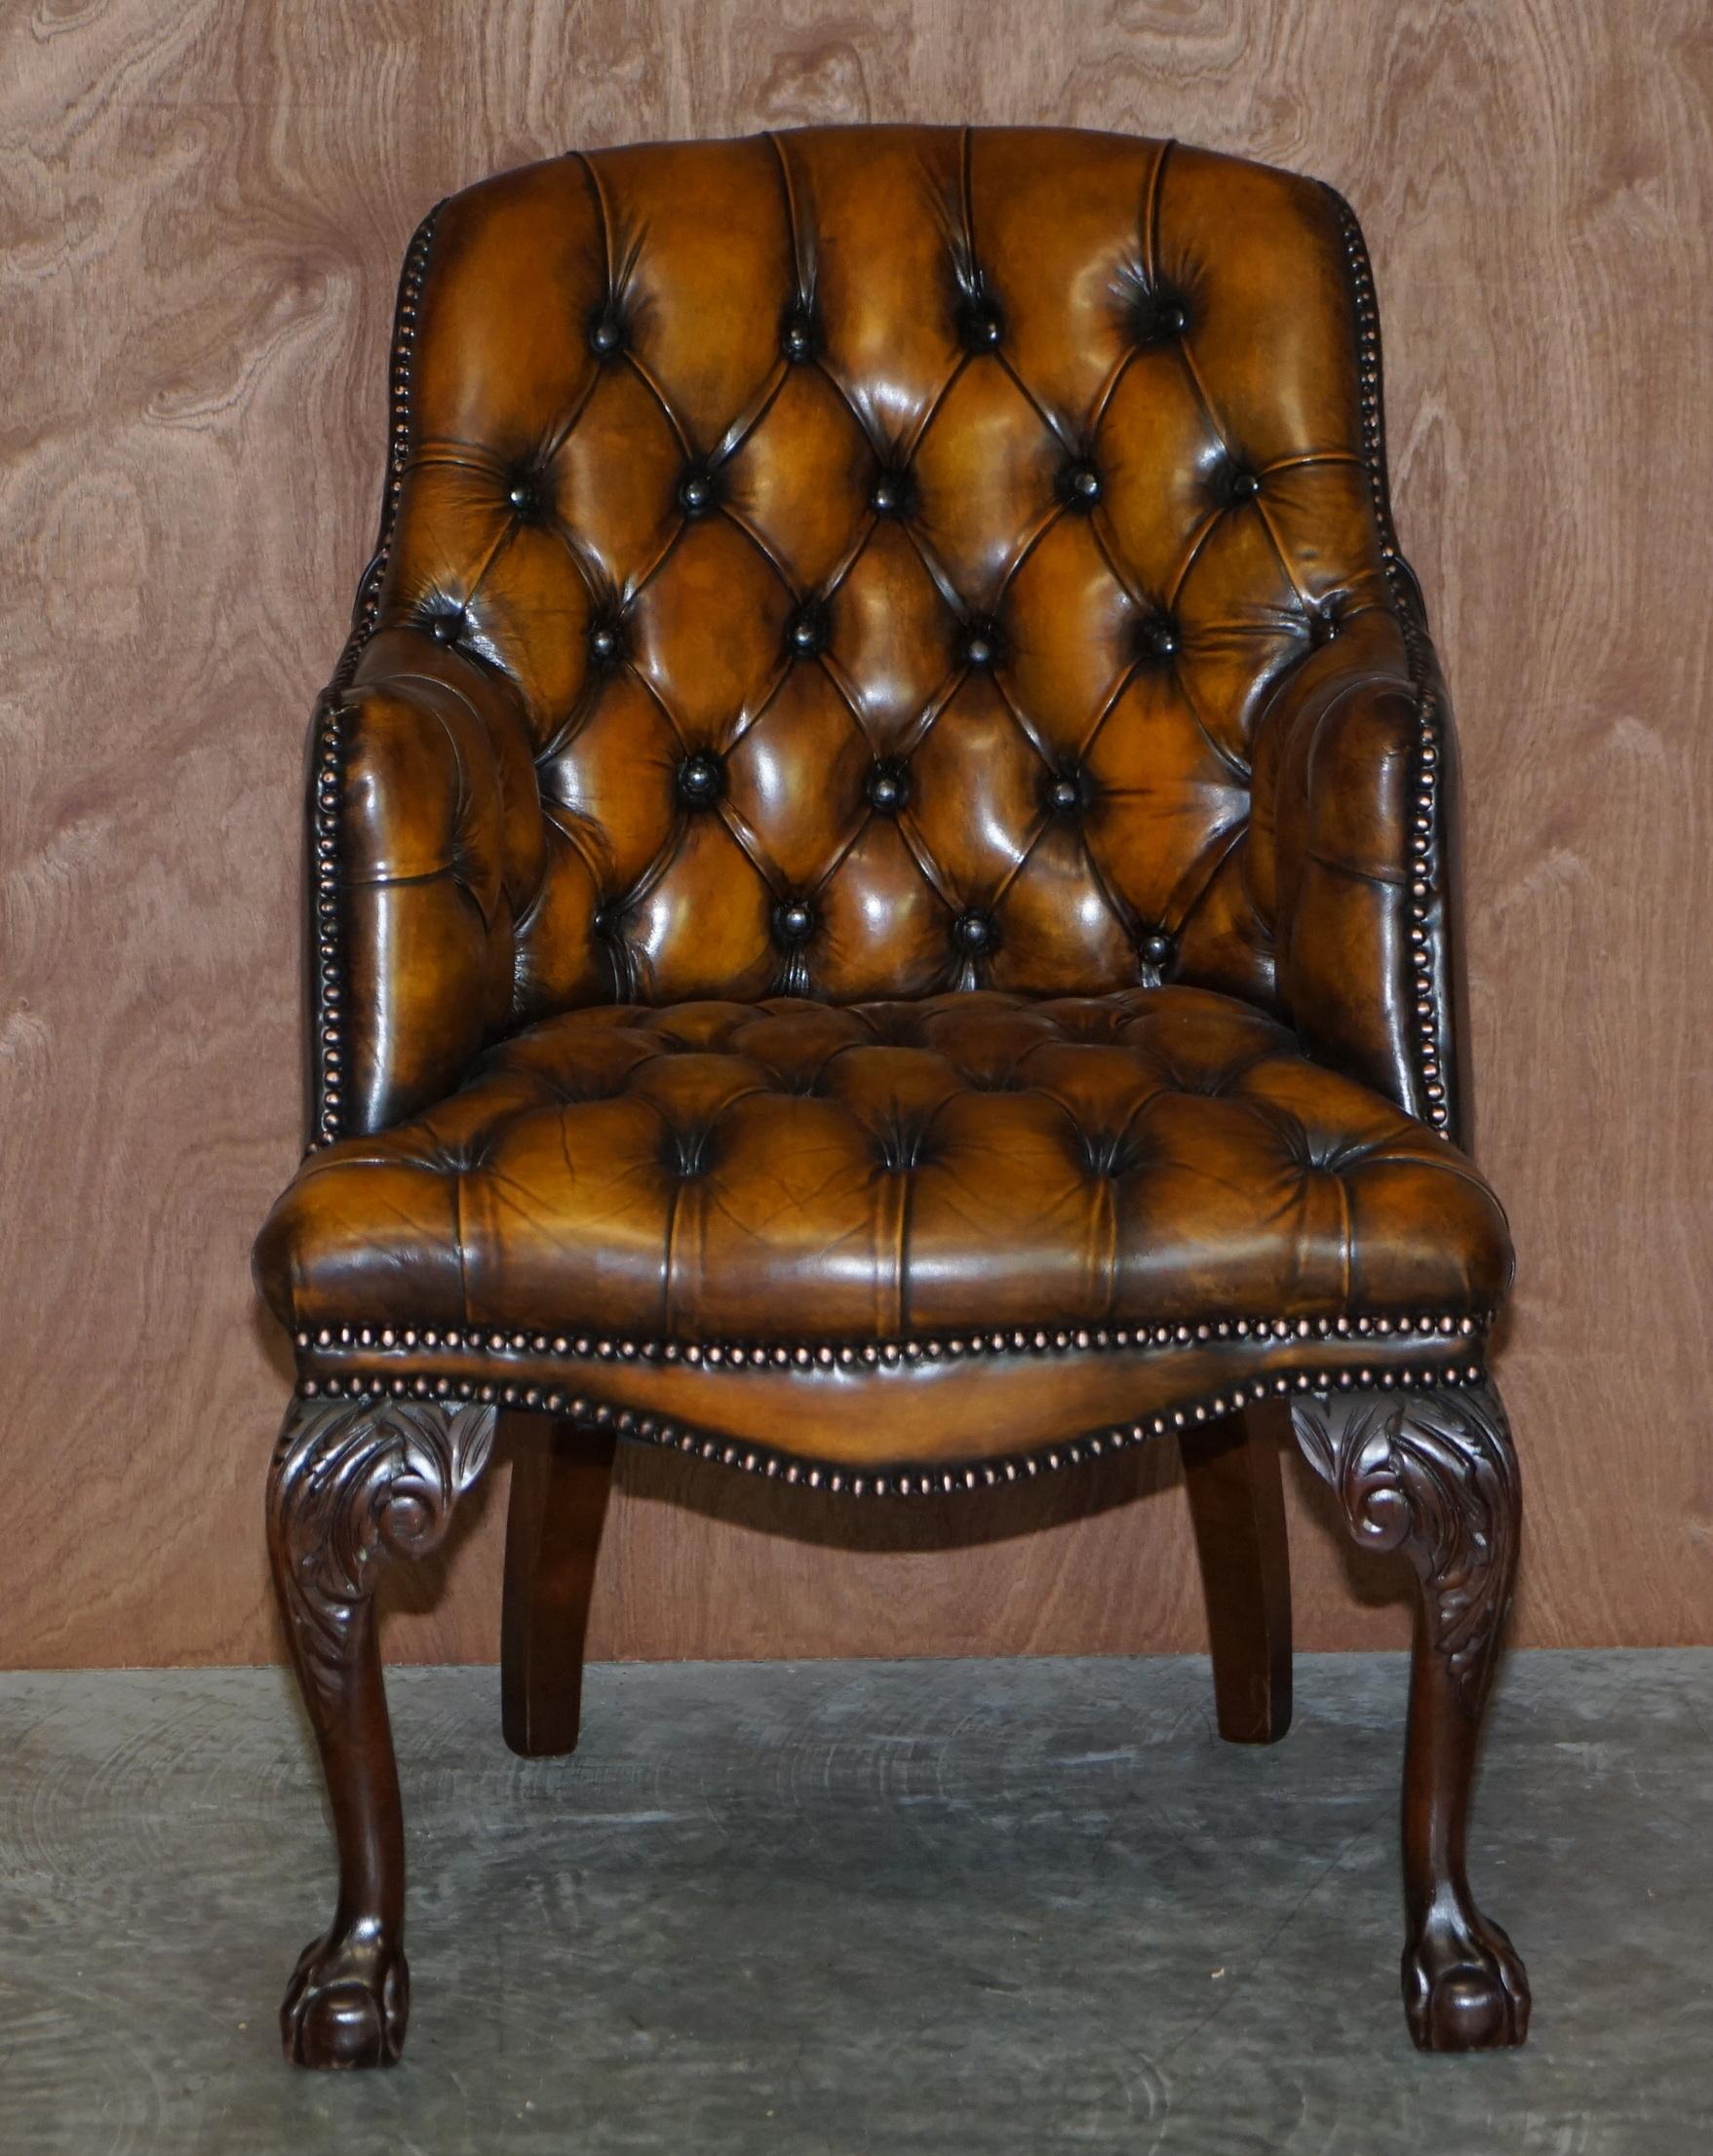 Royal House Antiques

Royal House Antiques a le plaisir d'offrir à la vente cet exceptionnel fauteuil de bureau ou d'appoint d'origine Harrods London, datant des années 1950, entièrement restauré

Veuillez noter que les frais de livraison